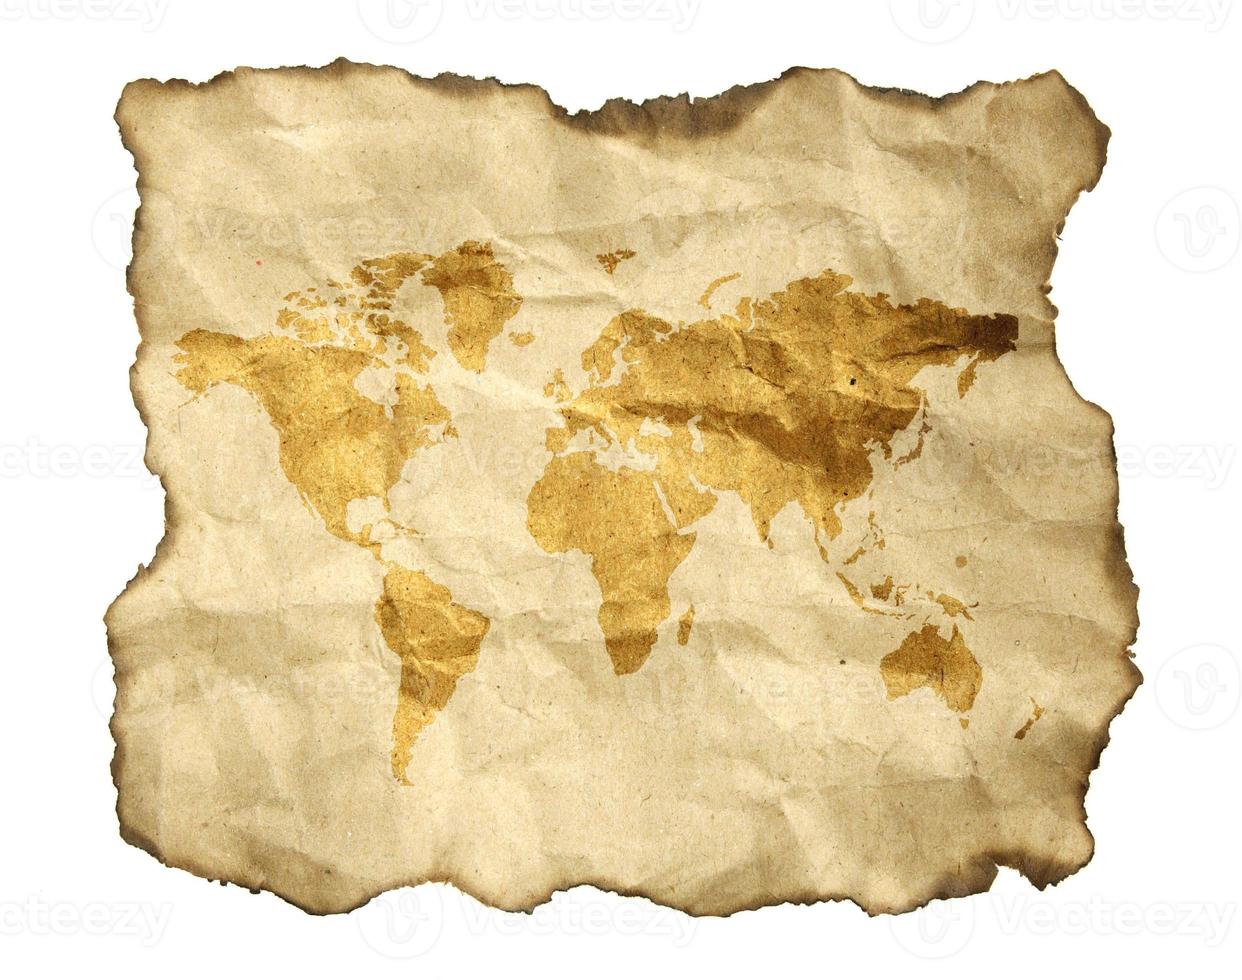 mapa antigo, isolado em um fundo branco foto